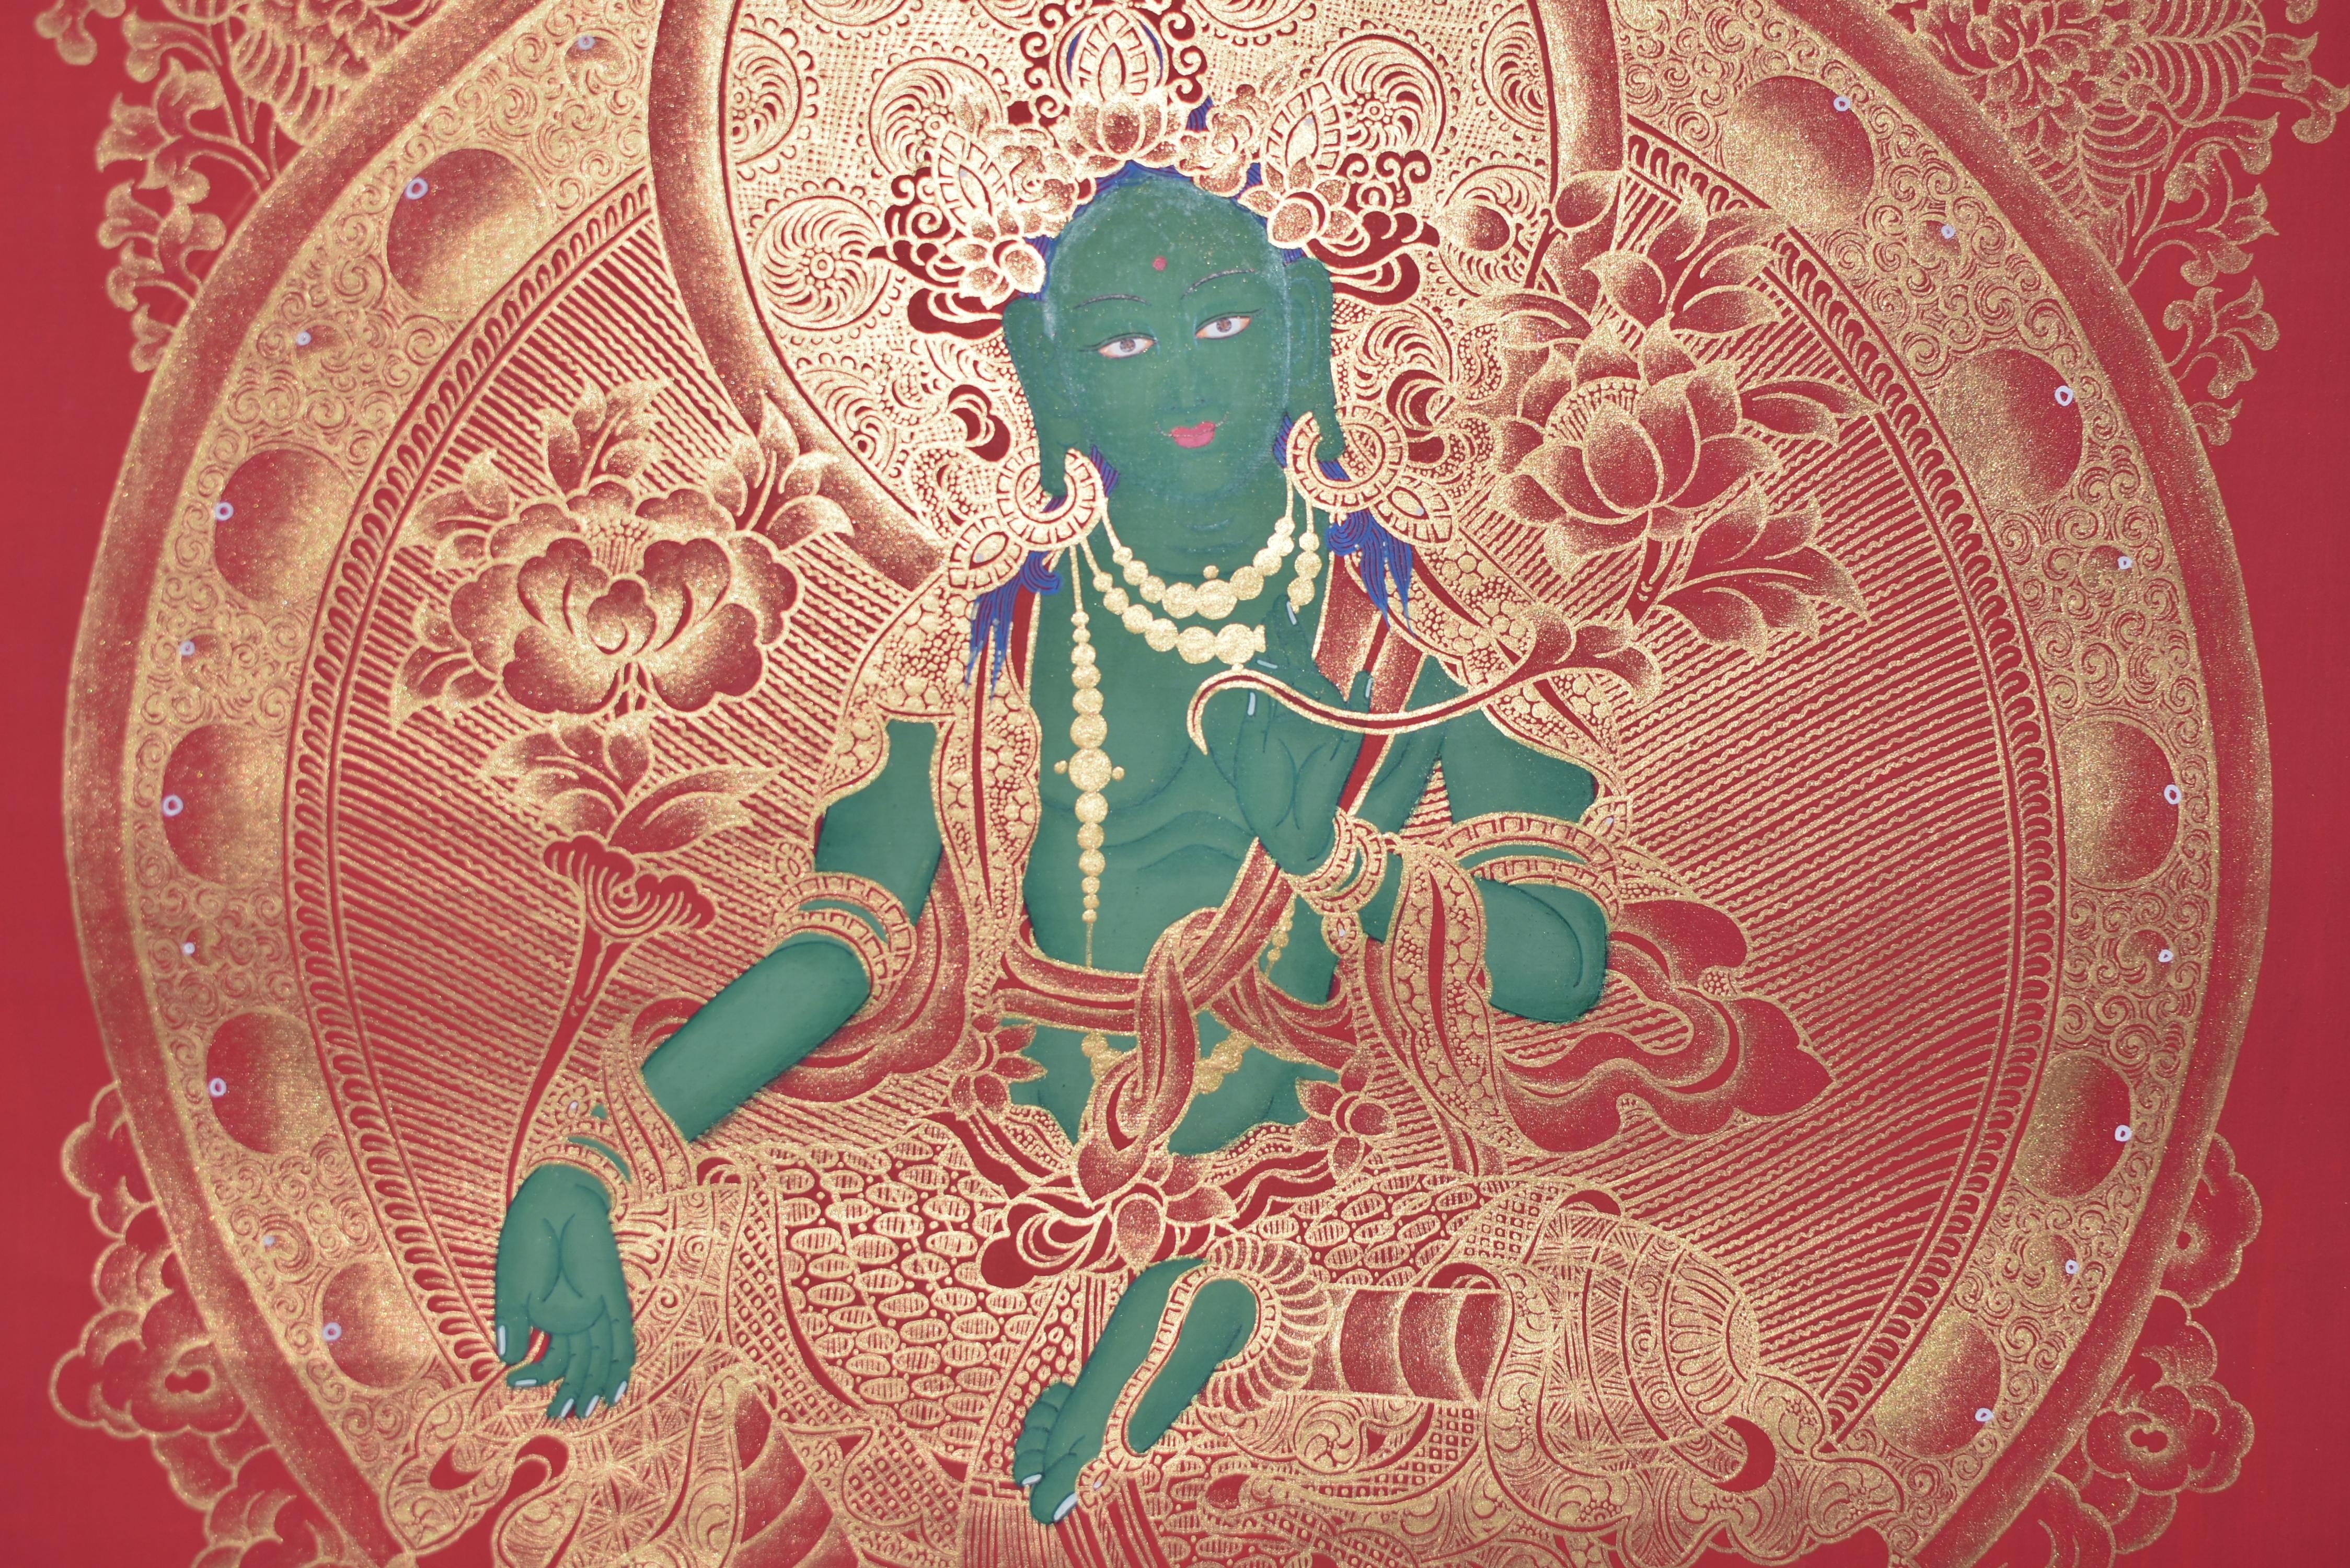 Ein außergewöhnliches, einzigartiges, extra langes, handgemaltes tibetisches Thangka, das die geliebte Grüne Tara darstellt. Sie sitzt auf einem hohen Lotusthron mit einem Paar heiliger Tiere, ihr rechtes Bein ist ausgestreckt, was bedeutet, dass